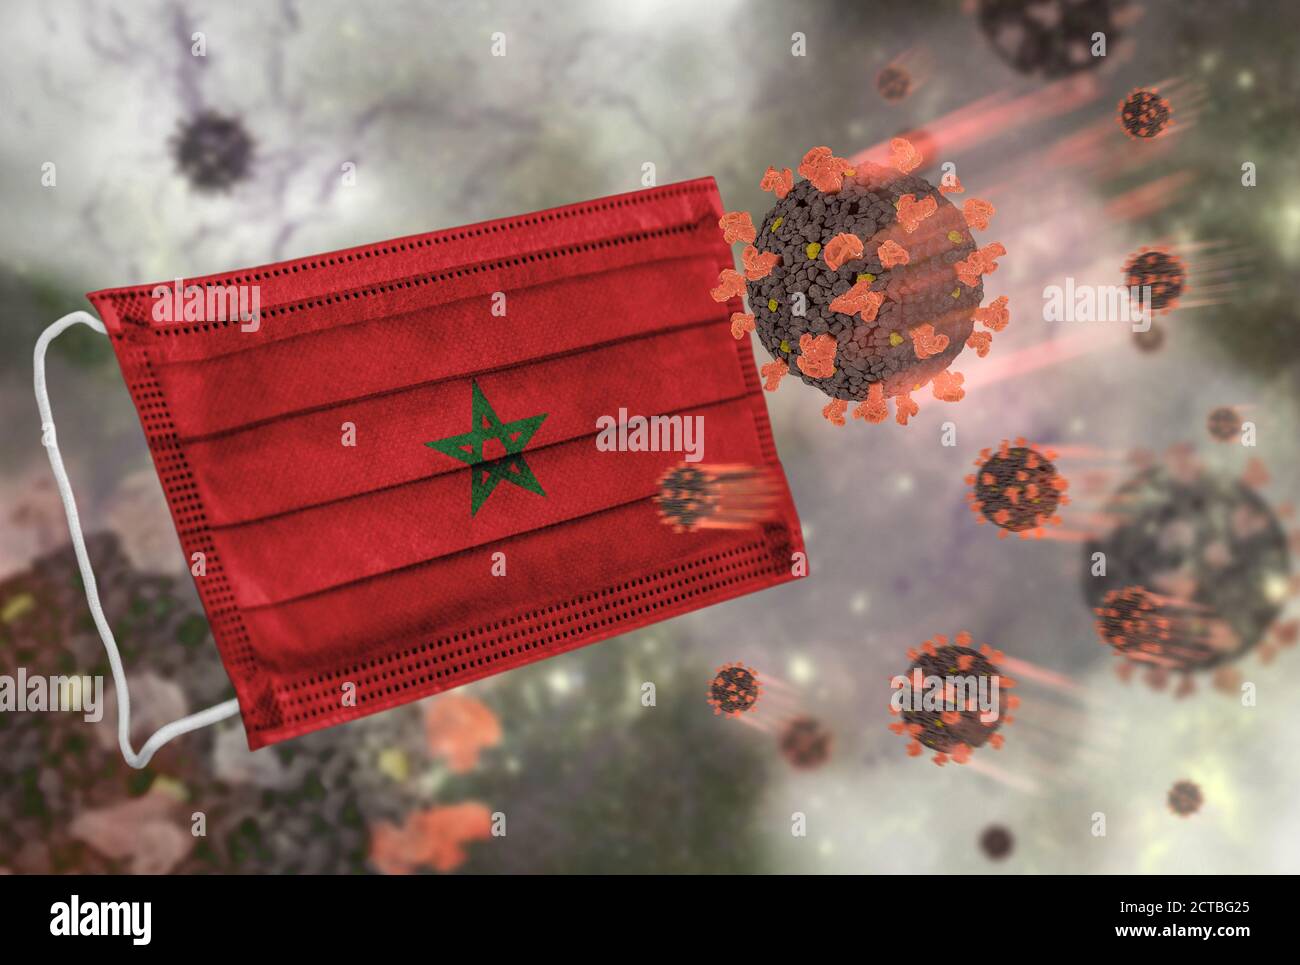 Masque facial avec drapeau du Maroc, défendant le coronavirus Banque D'Images